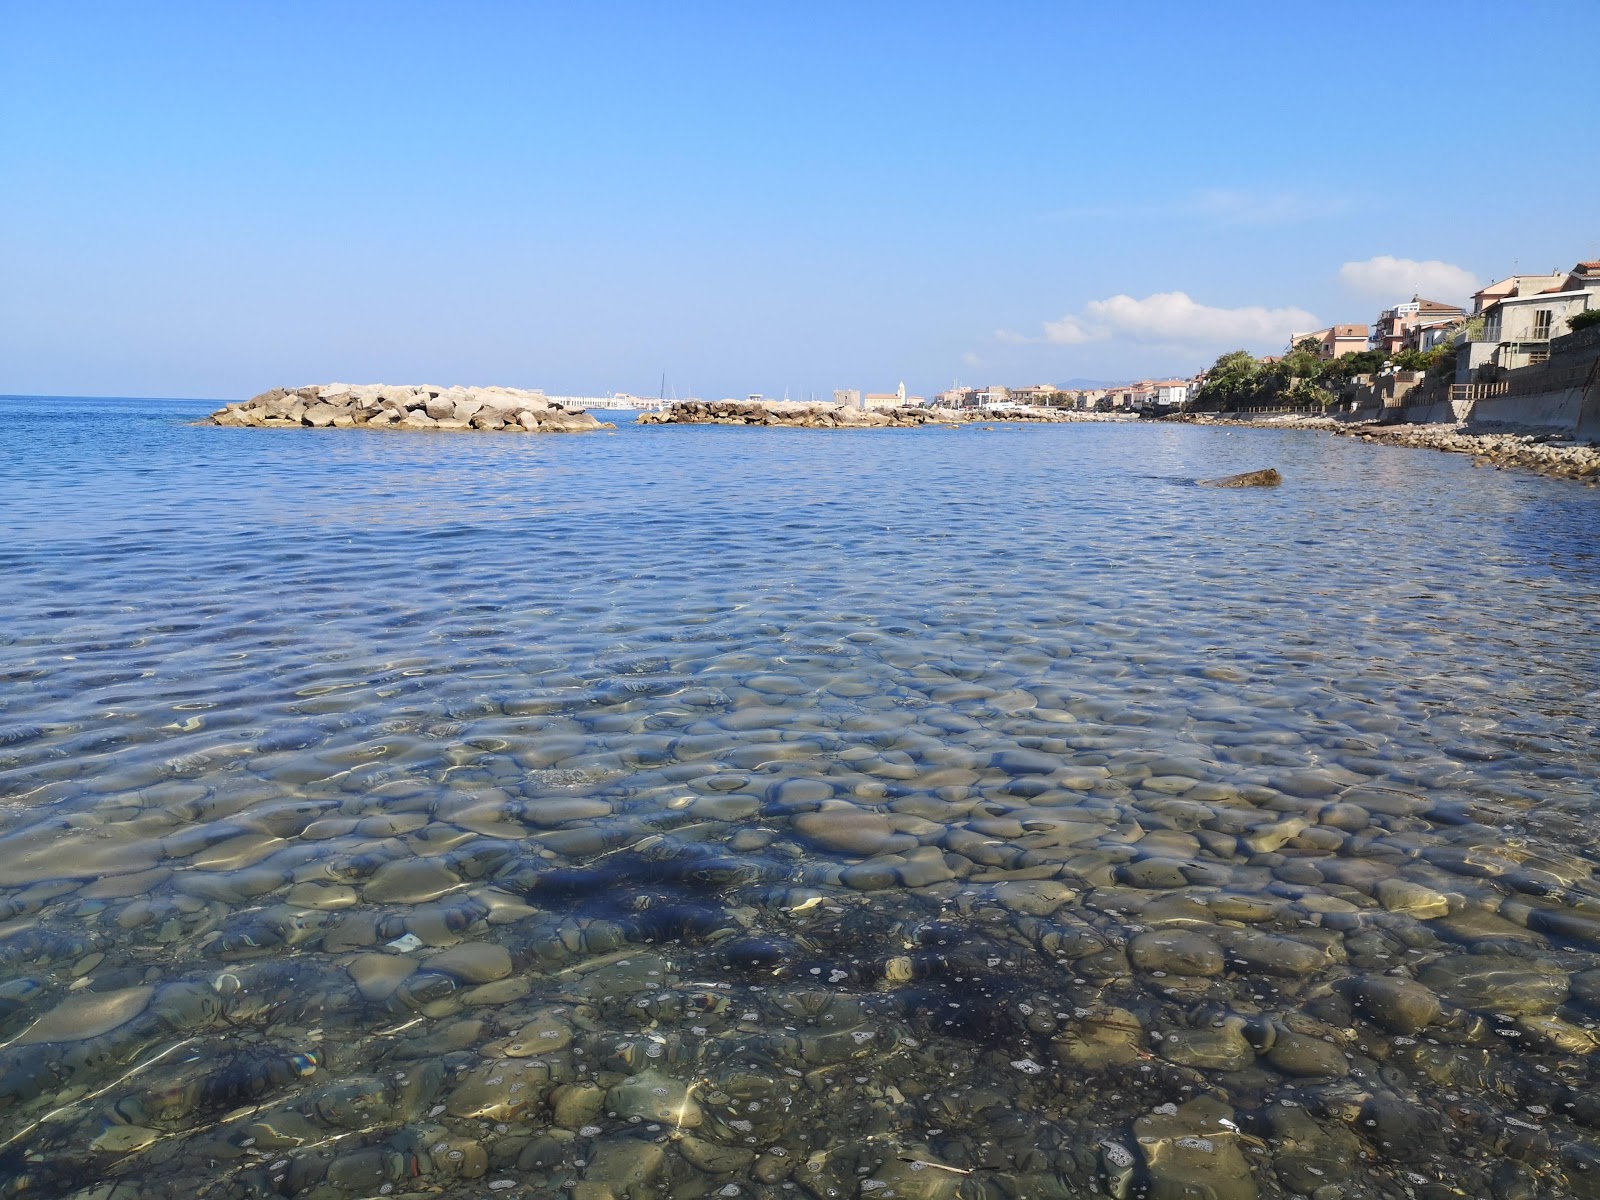 Fotografie cu Acciaroli beach cu o suprafață de apa albastra